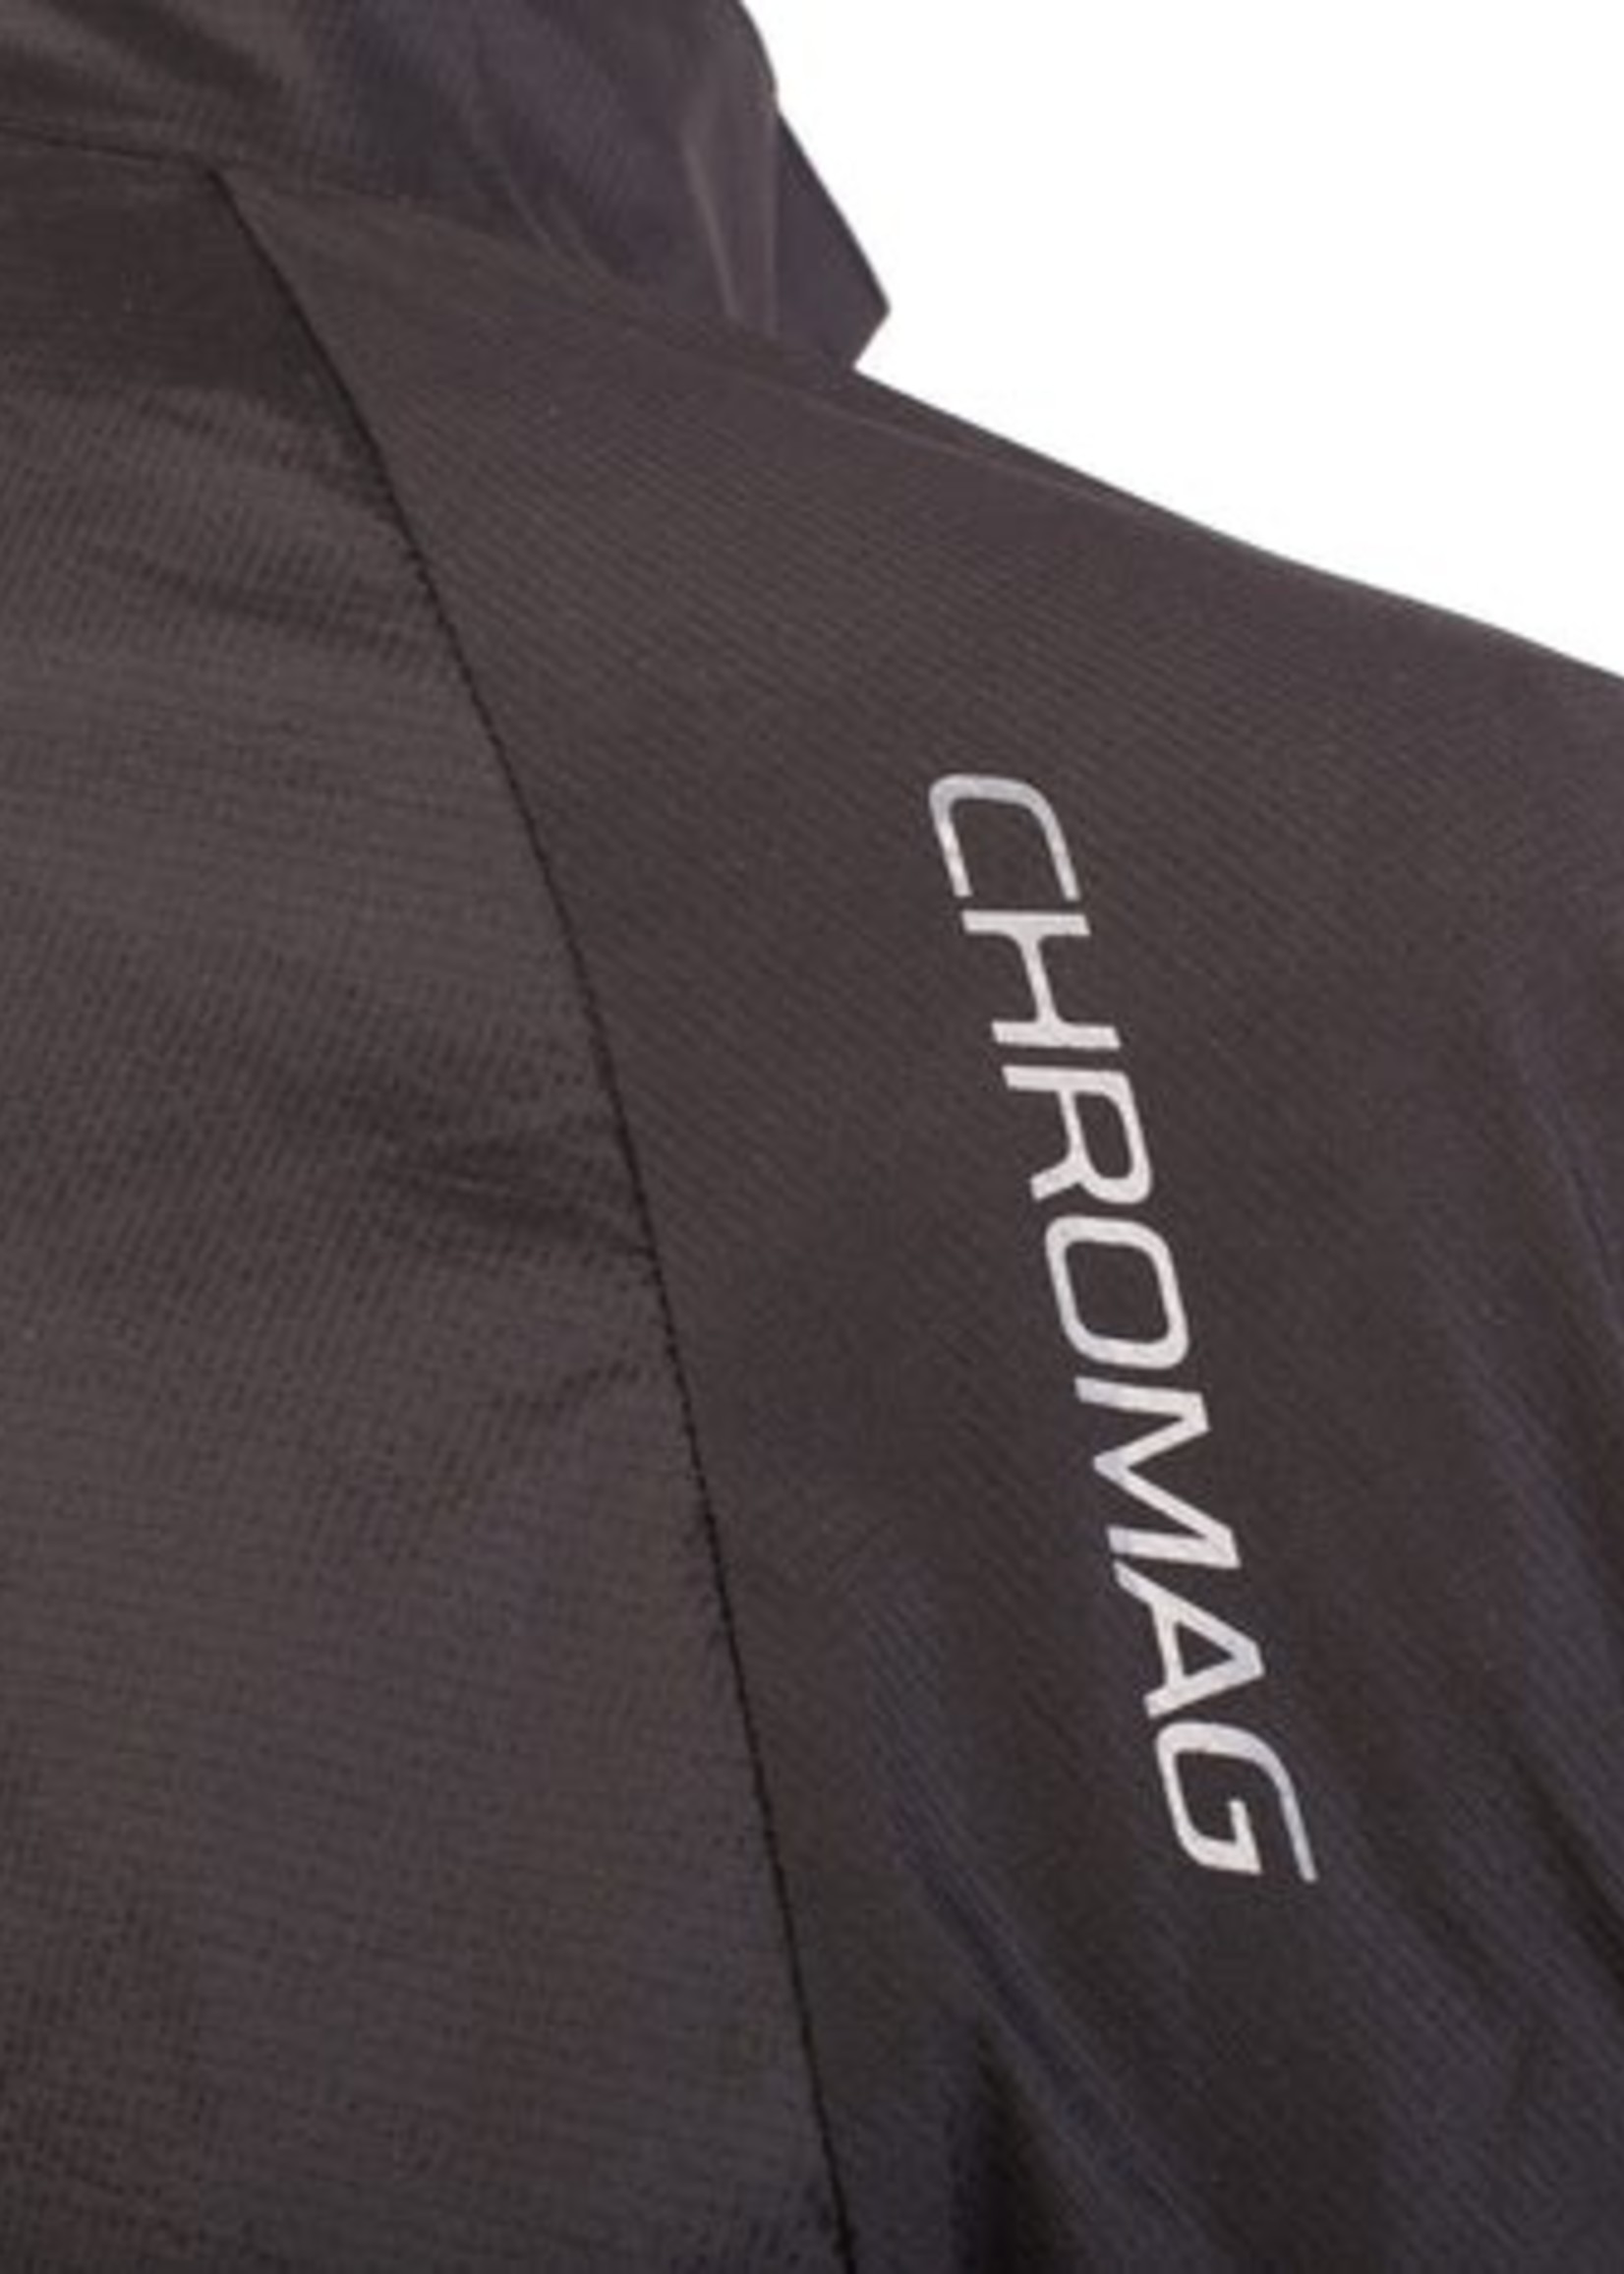 CHROMAG Chromag Factor Jacket